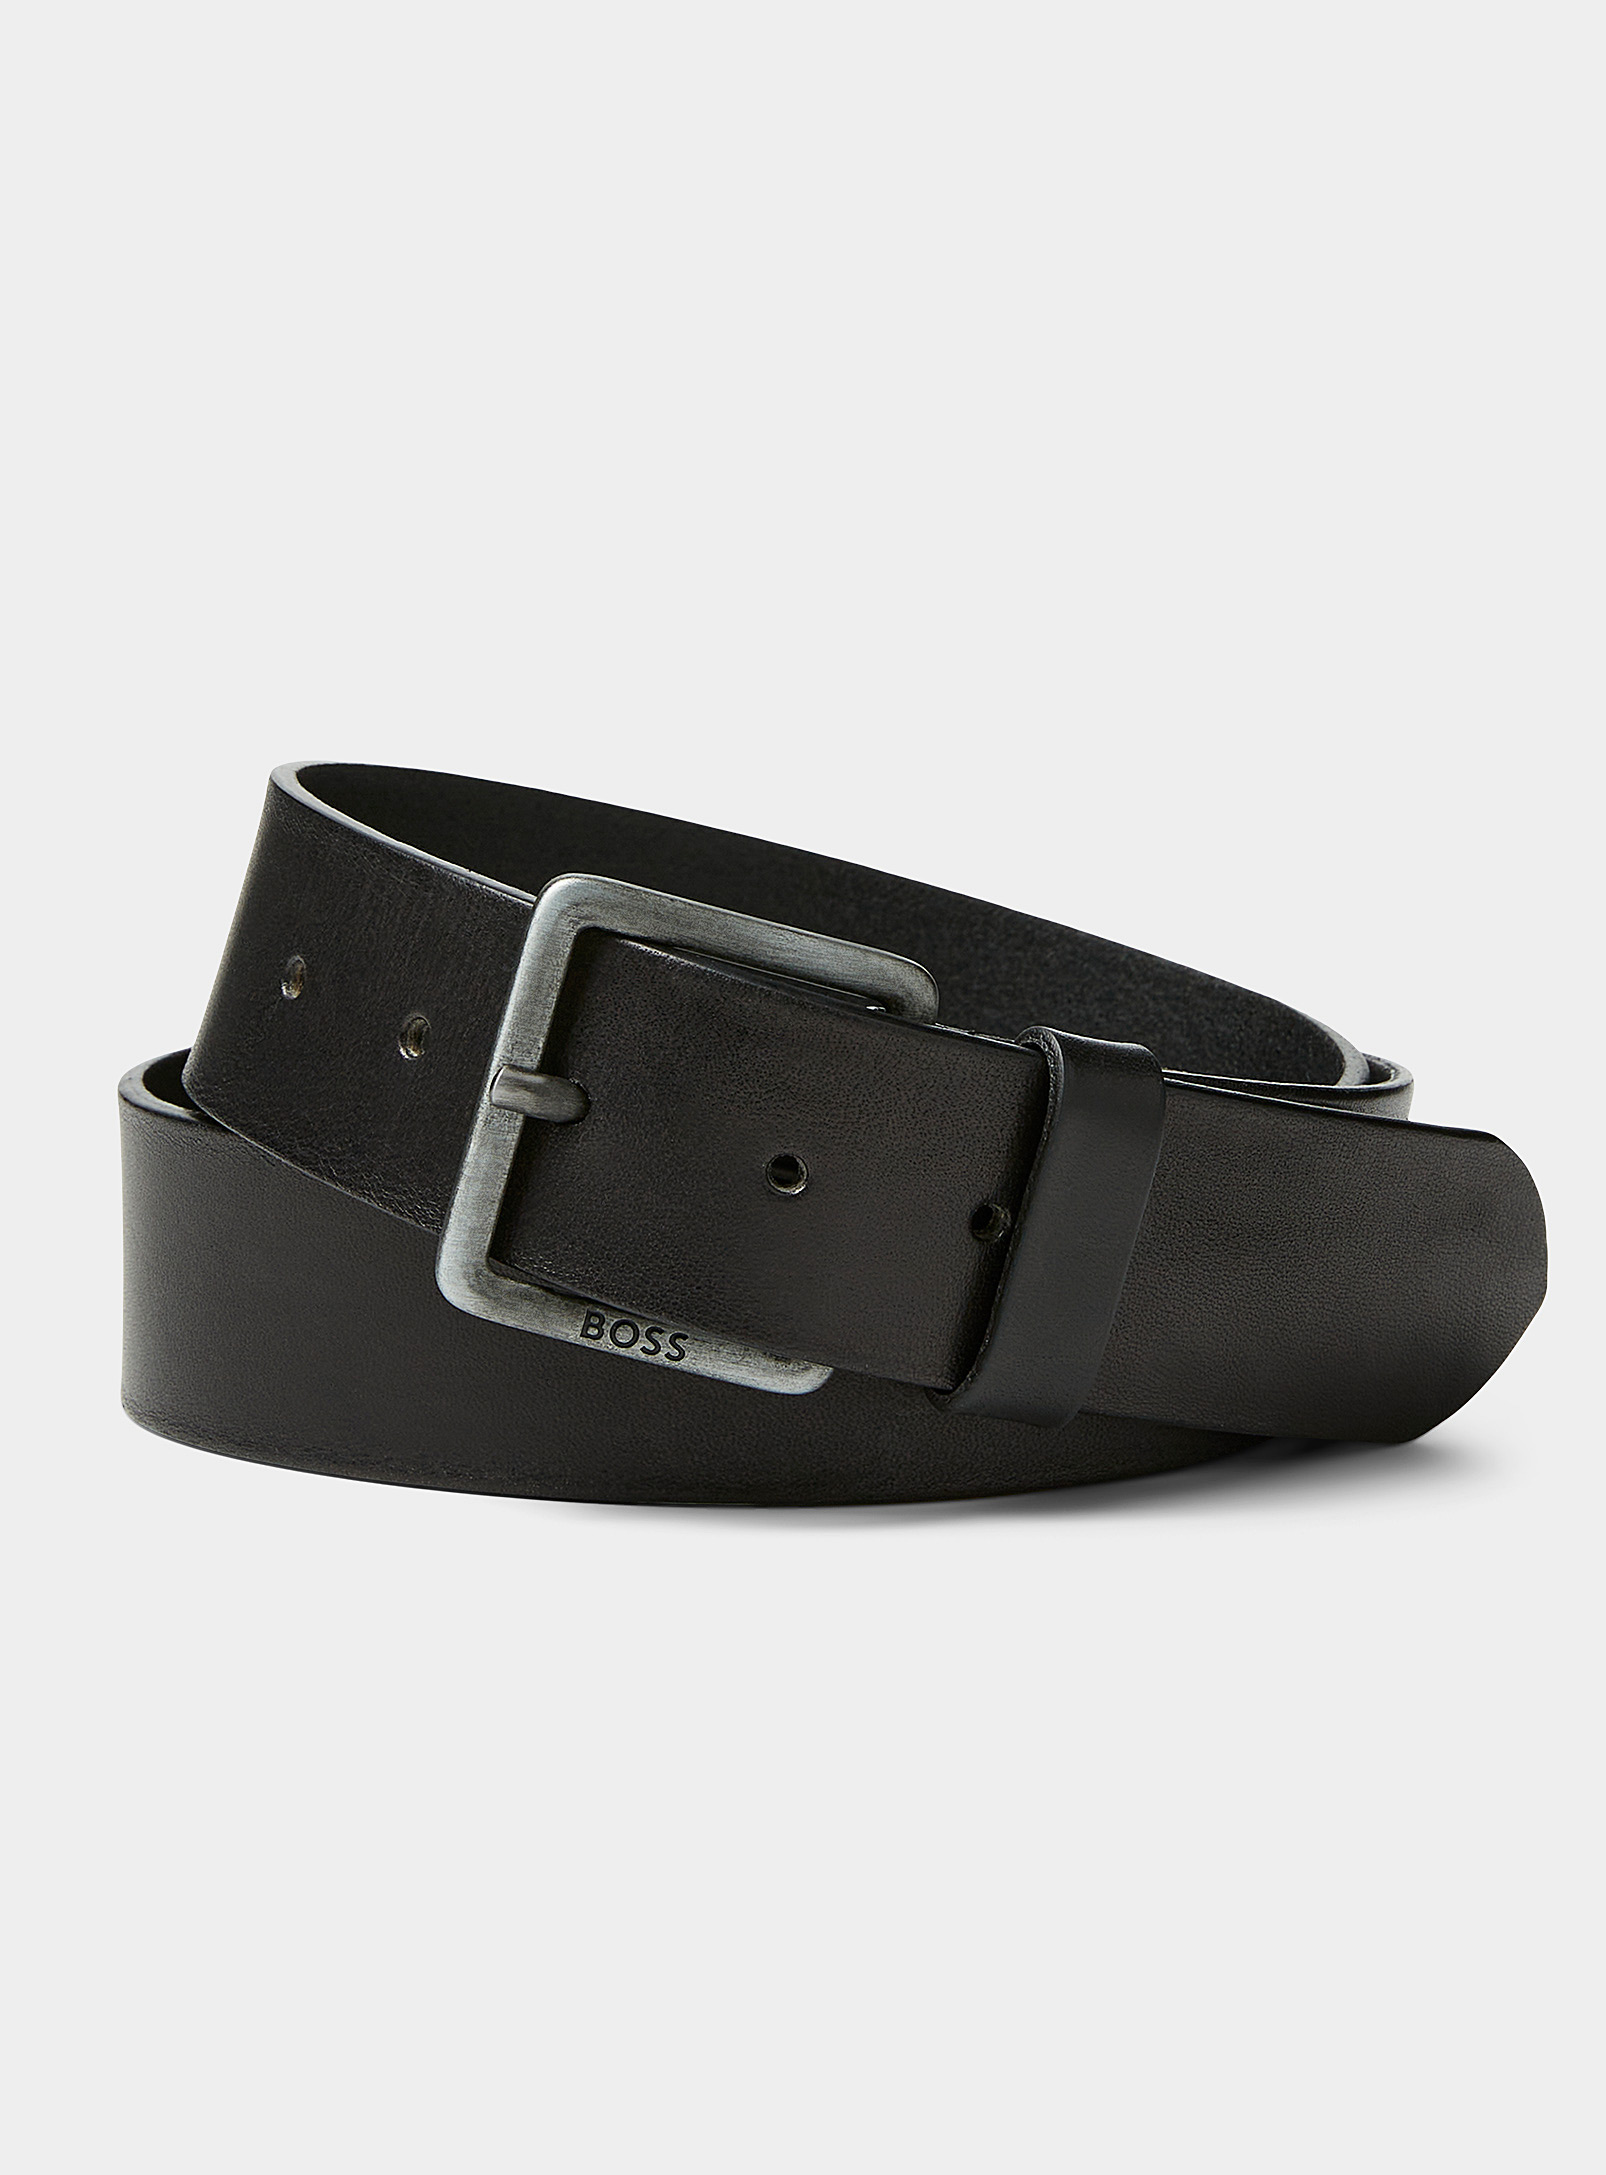 Hugo Boss Jeeko Leather Belt In Black